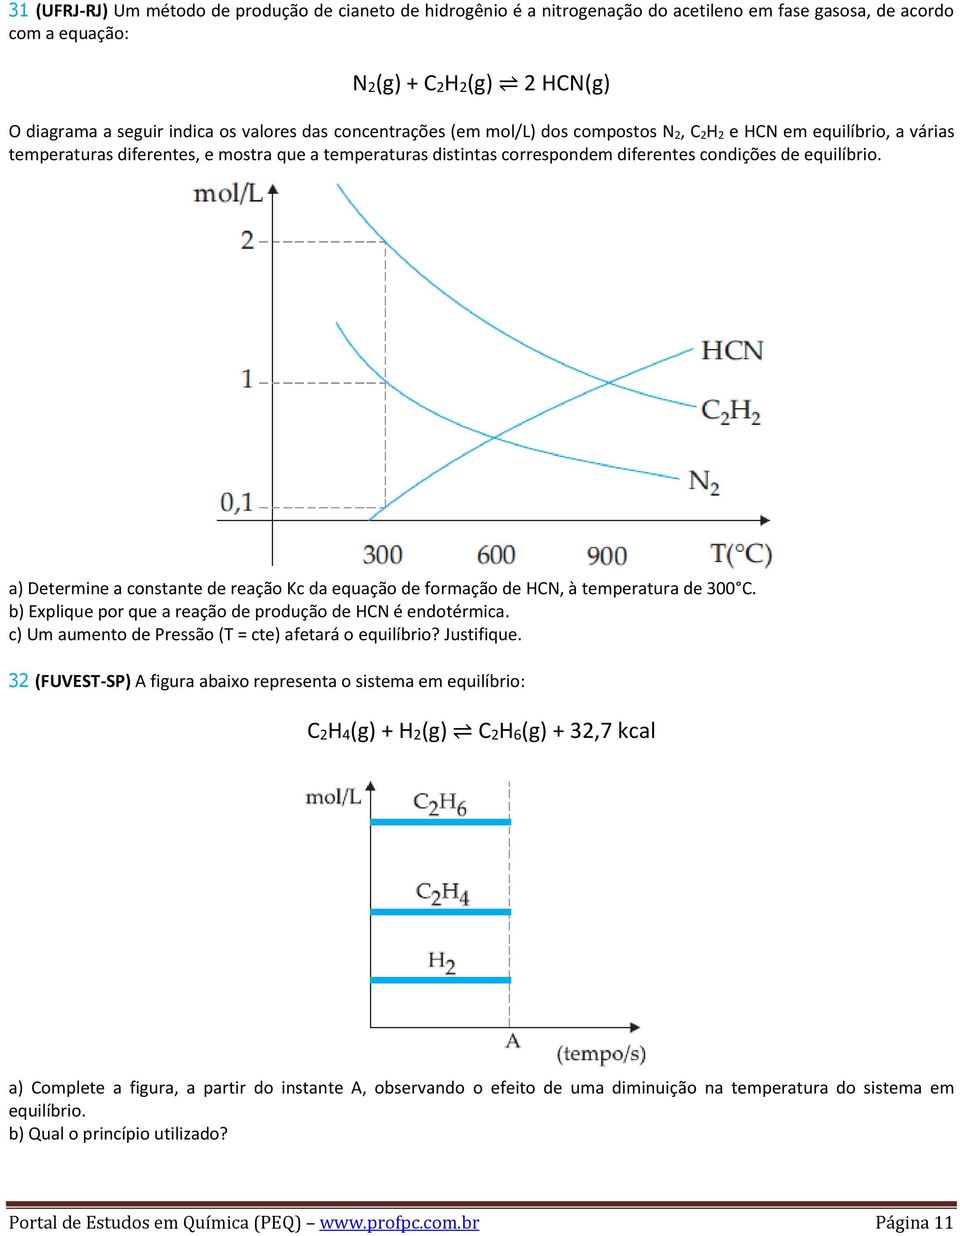 a) Determine a constante de reação Kc da equação de formação de HCN, à temperatura de 300 C. b) Explique por que a reação de produção de HCN é endotérmica.